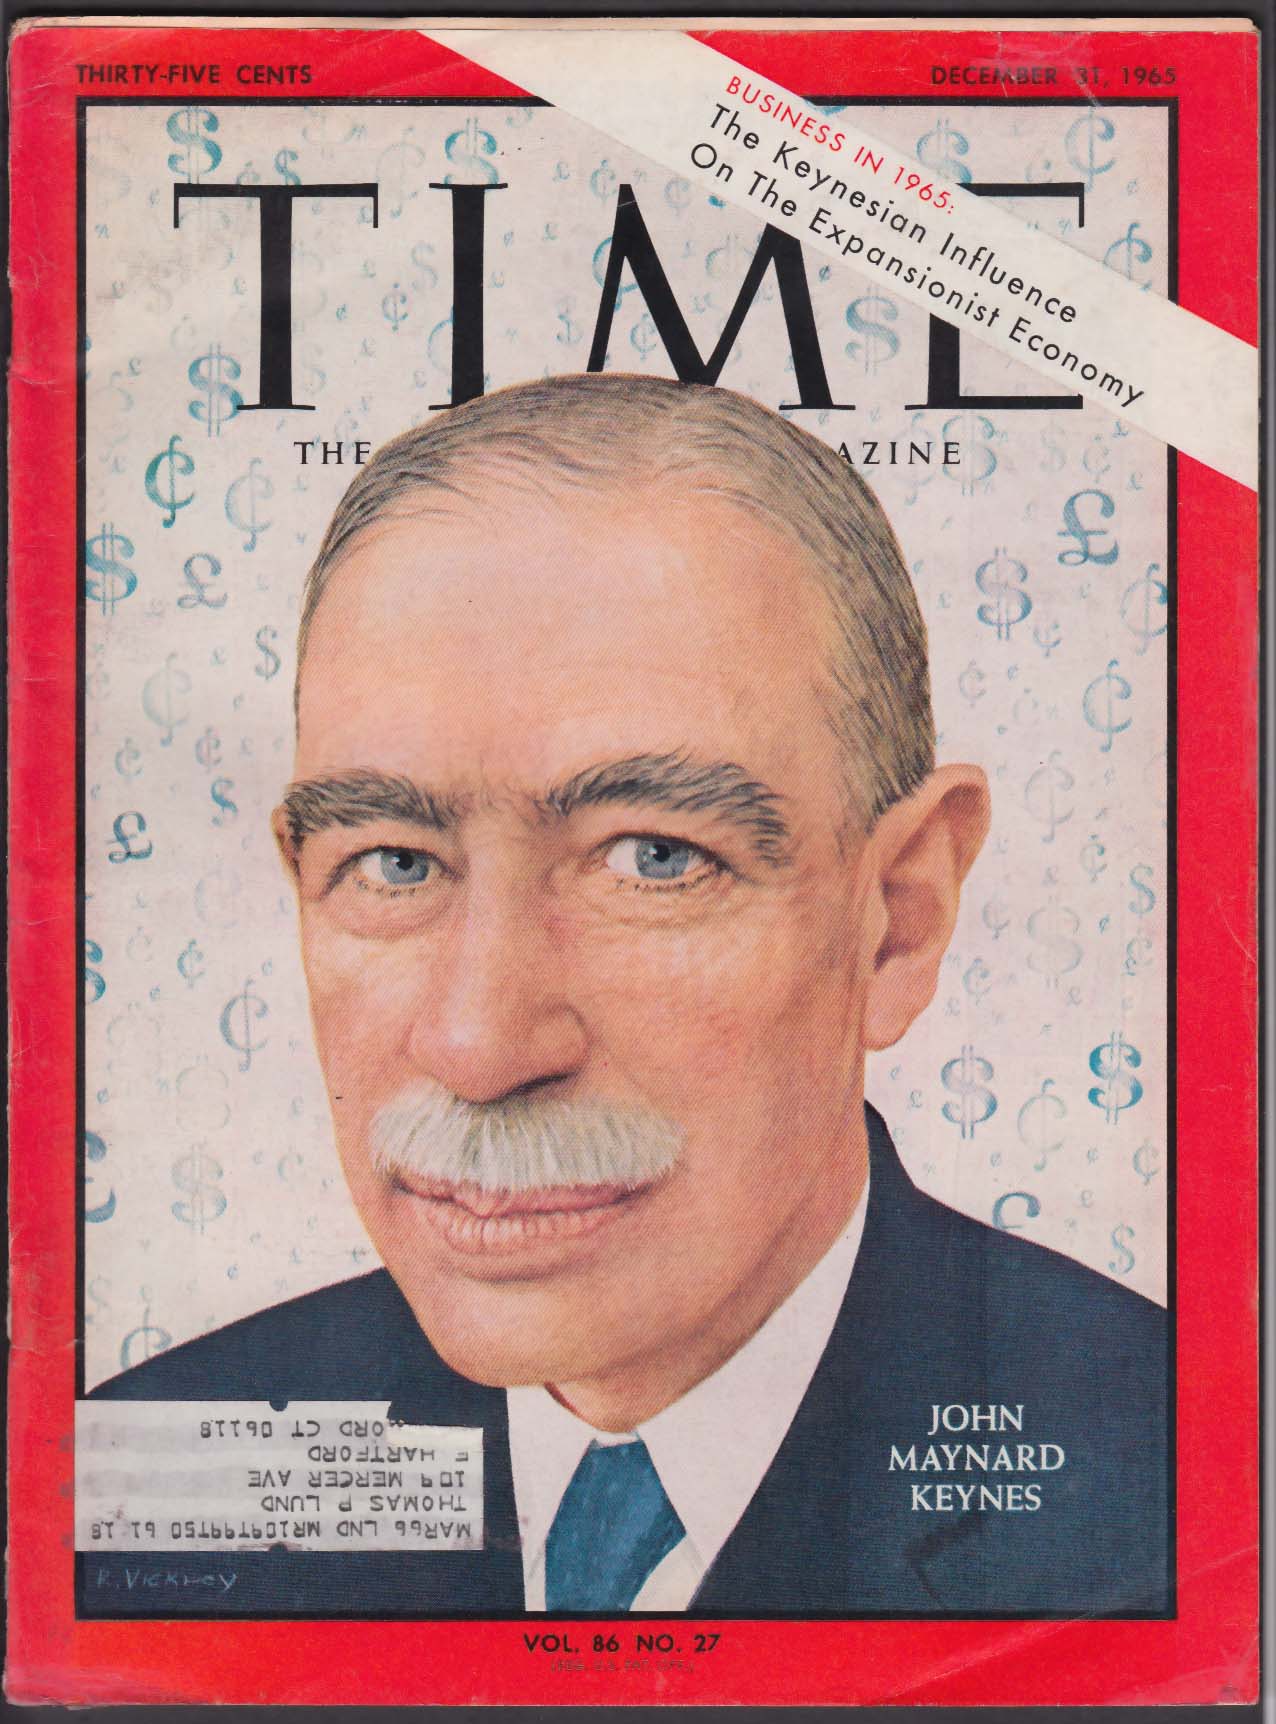 Ο Τζων Μέυναρντ Κέυνς, πρώτος βαρώνος Κέυνς του Τίλτον (John Maynard Keynes, 5 Ιουνίου 1883 – 21 Απριλίου 1946) ήταν Άγγλος οικονομολόγος, μαθηματικός, καθηγητής πανεπιστημίου, συγγραφέας και ανώτατος κρατικός υπάλληλος. Εξώφυλλο του περιοδικού TIME